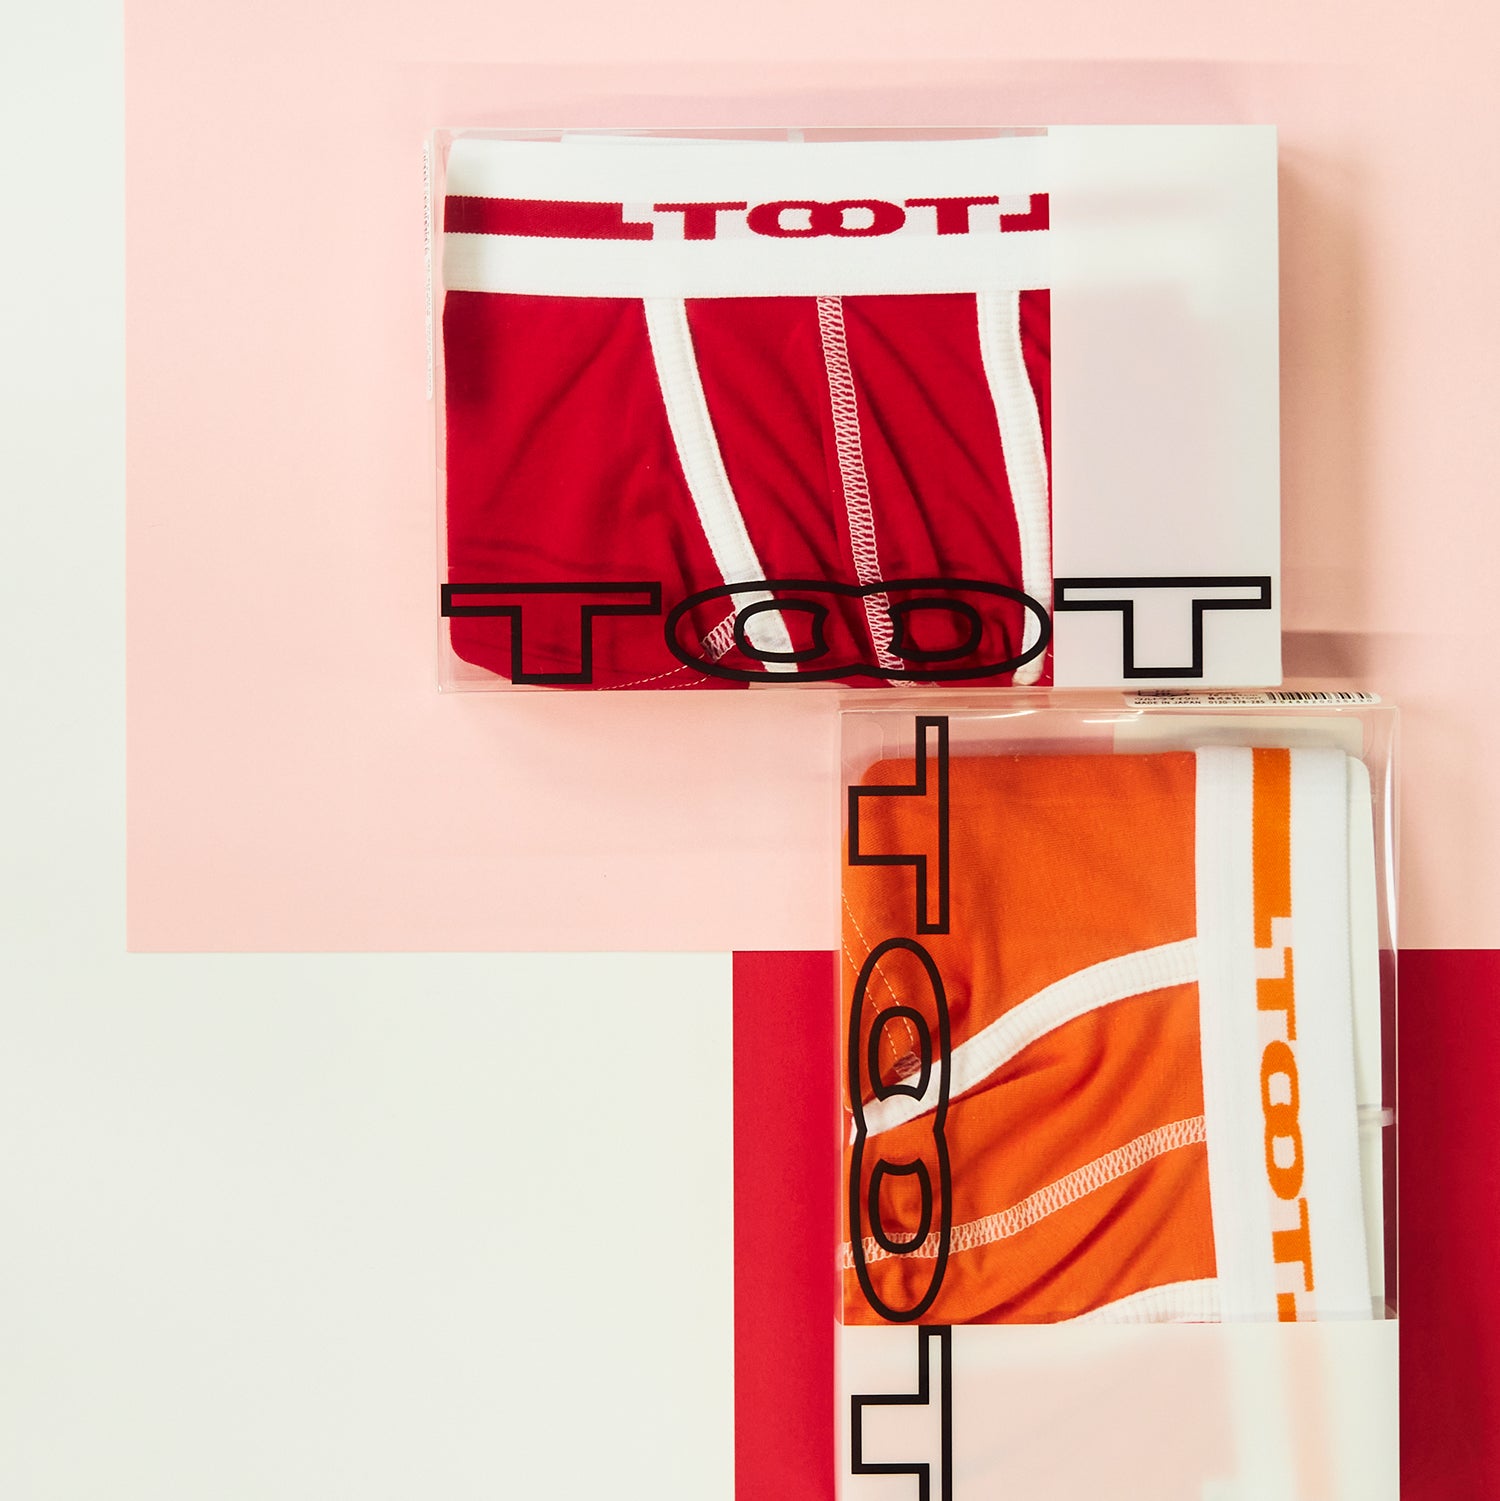 ReNEW TOOT COTTON  Men's Underwear brand TOOT official website